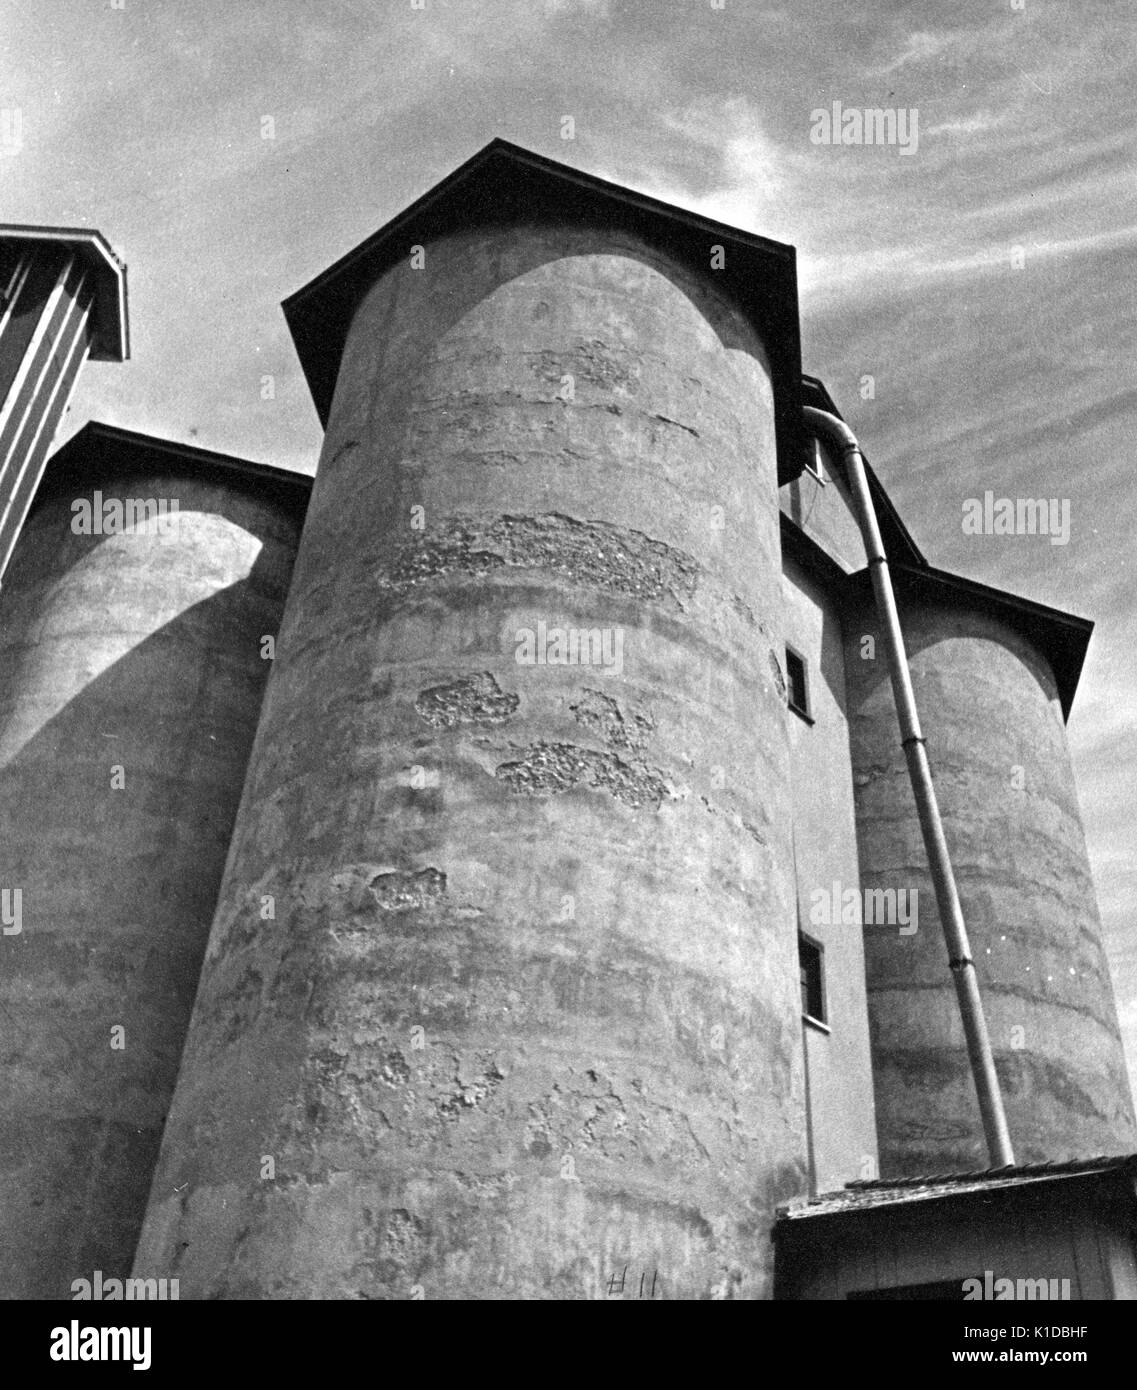 Vista ad angolo basso di silos di grano silos sagome contro il cielo, parzialmente in ombra, Beltsville, Maryland, 1935. Dalla Biblioteca pubblica di New York. Foto Stock